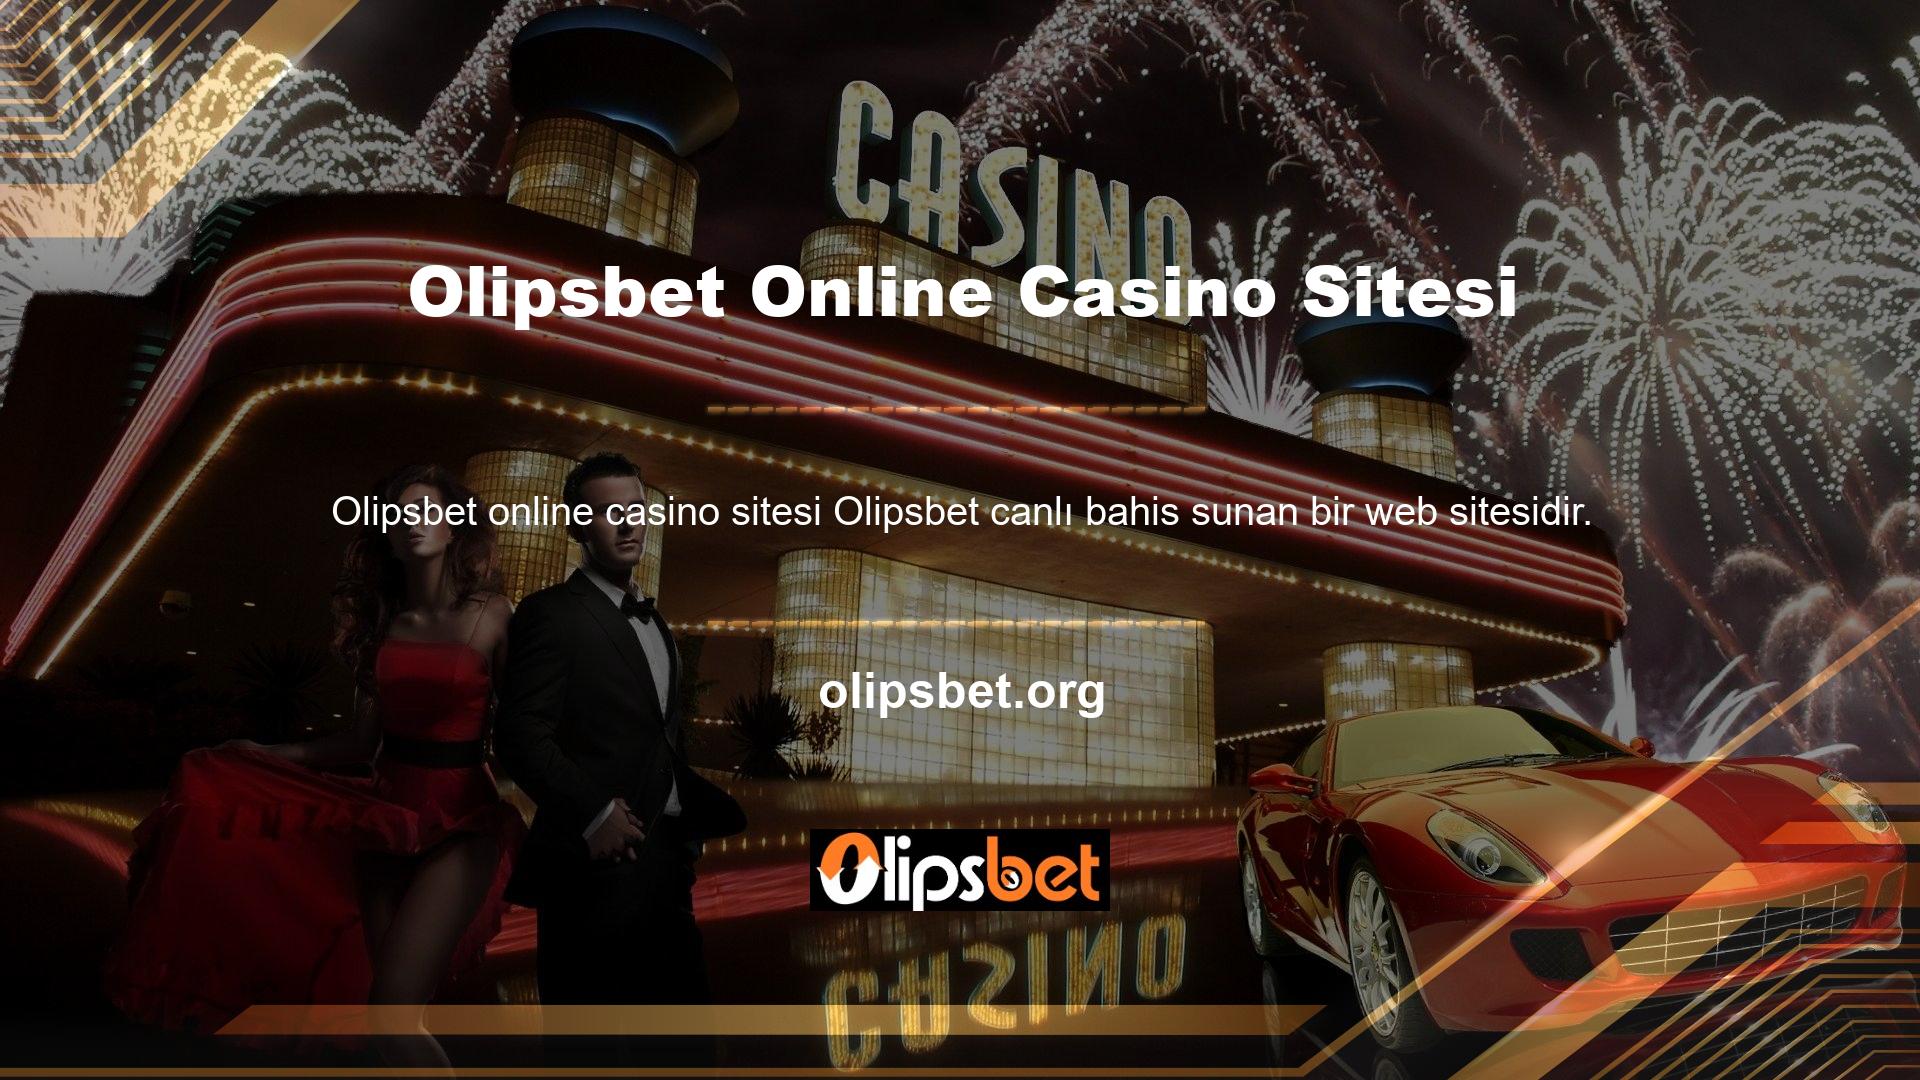 Online casino siteleri son zamanlarda oldukça popüler hale geldi